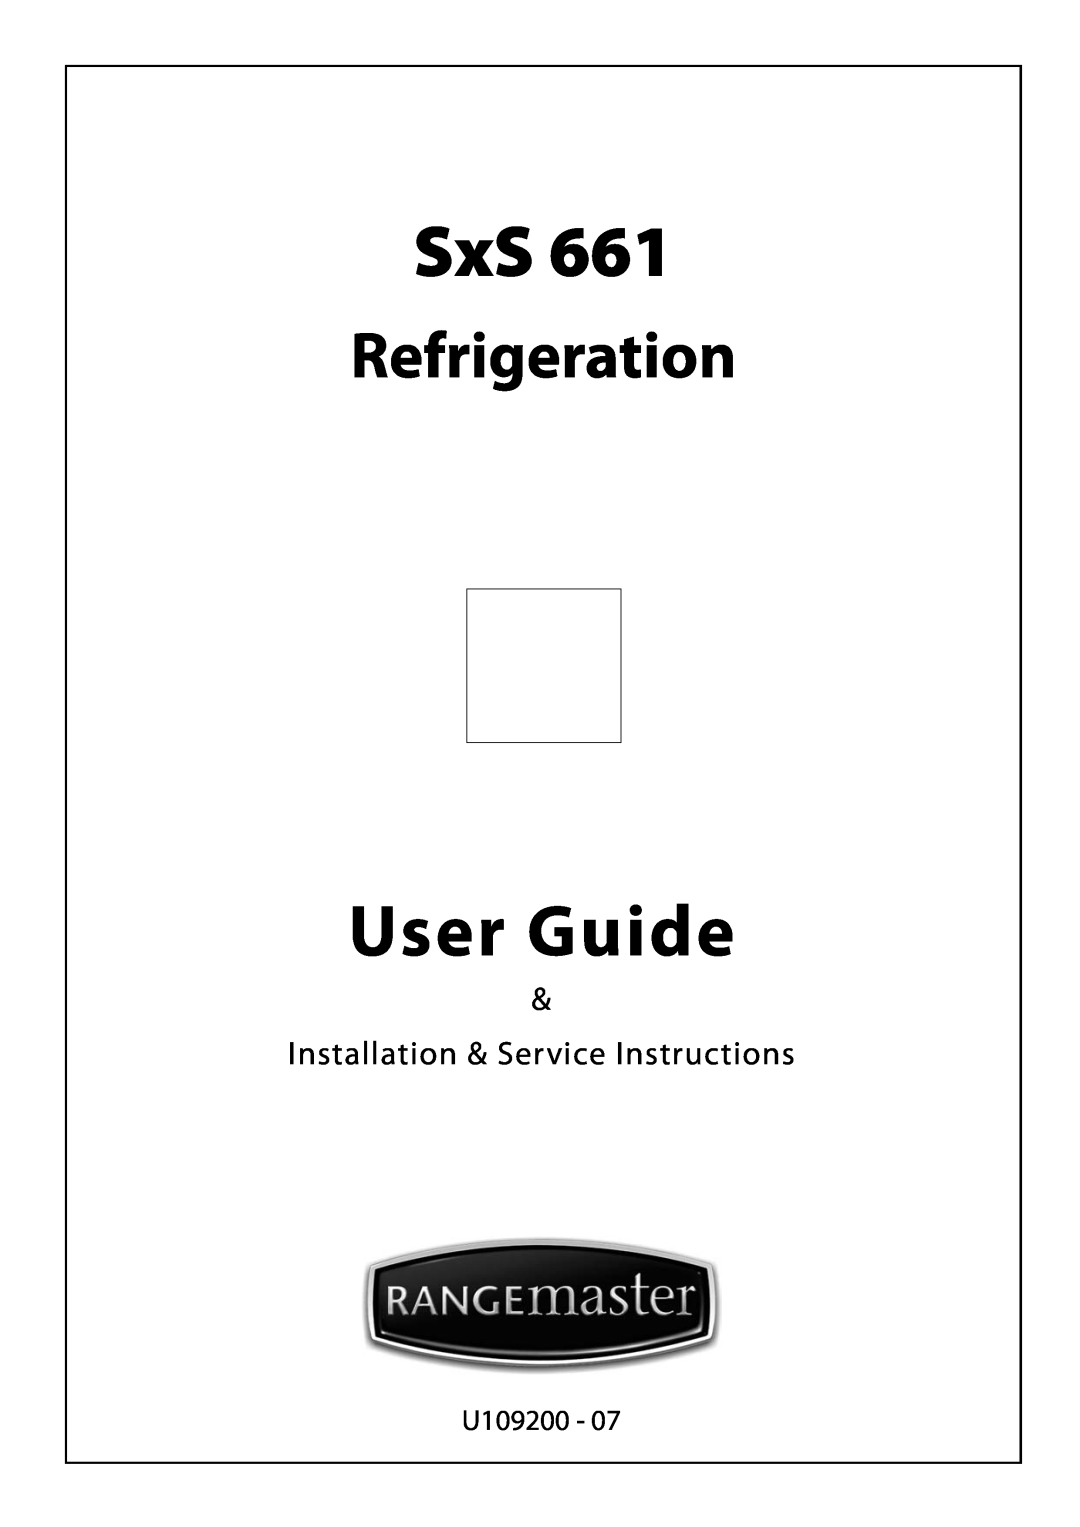 Rangemaster SxS 661 manual U109200, User Guide, Refrigeration, Installation & Service Instructions 